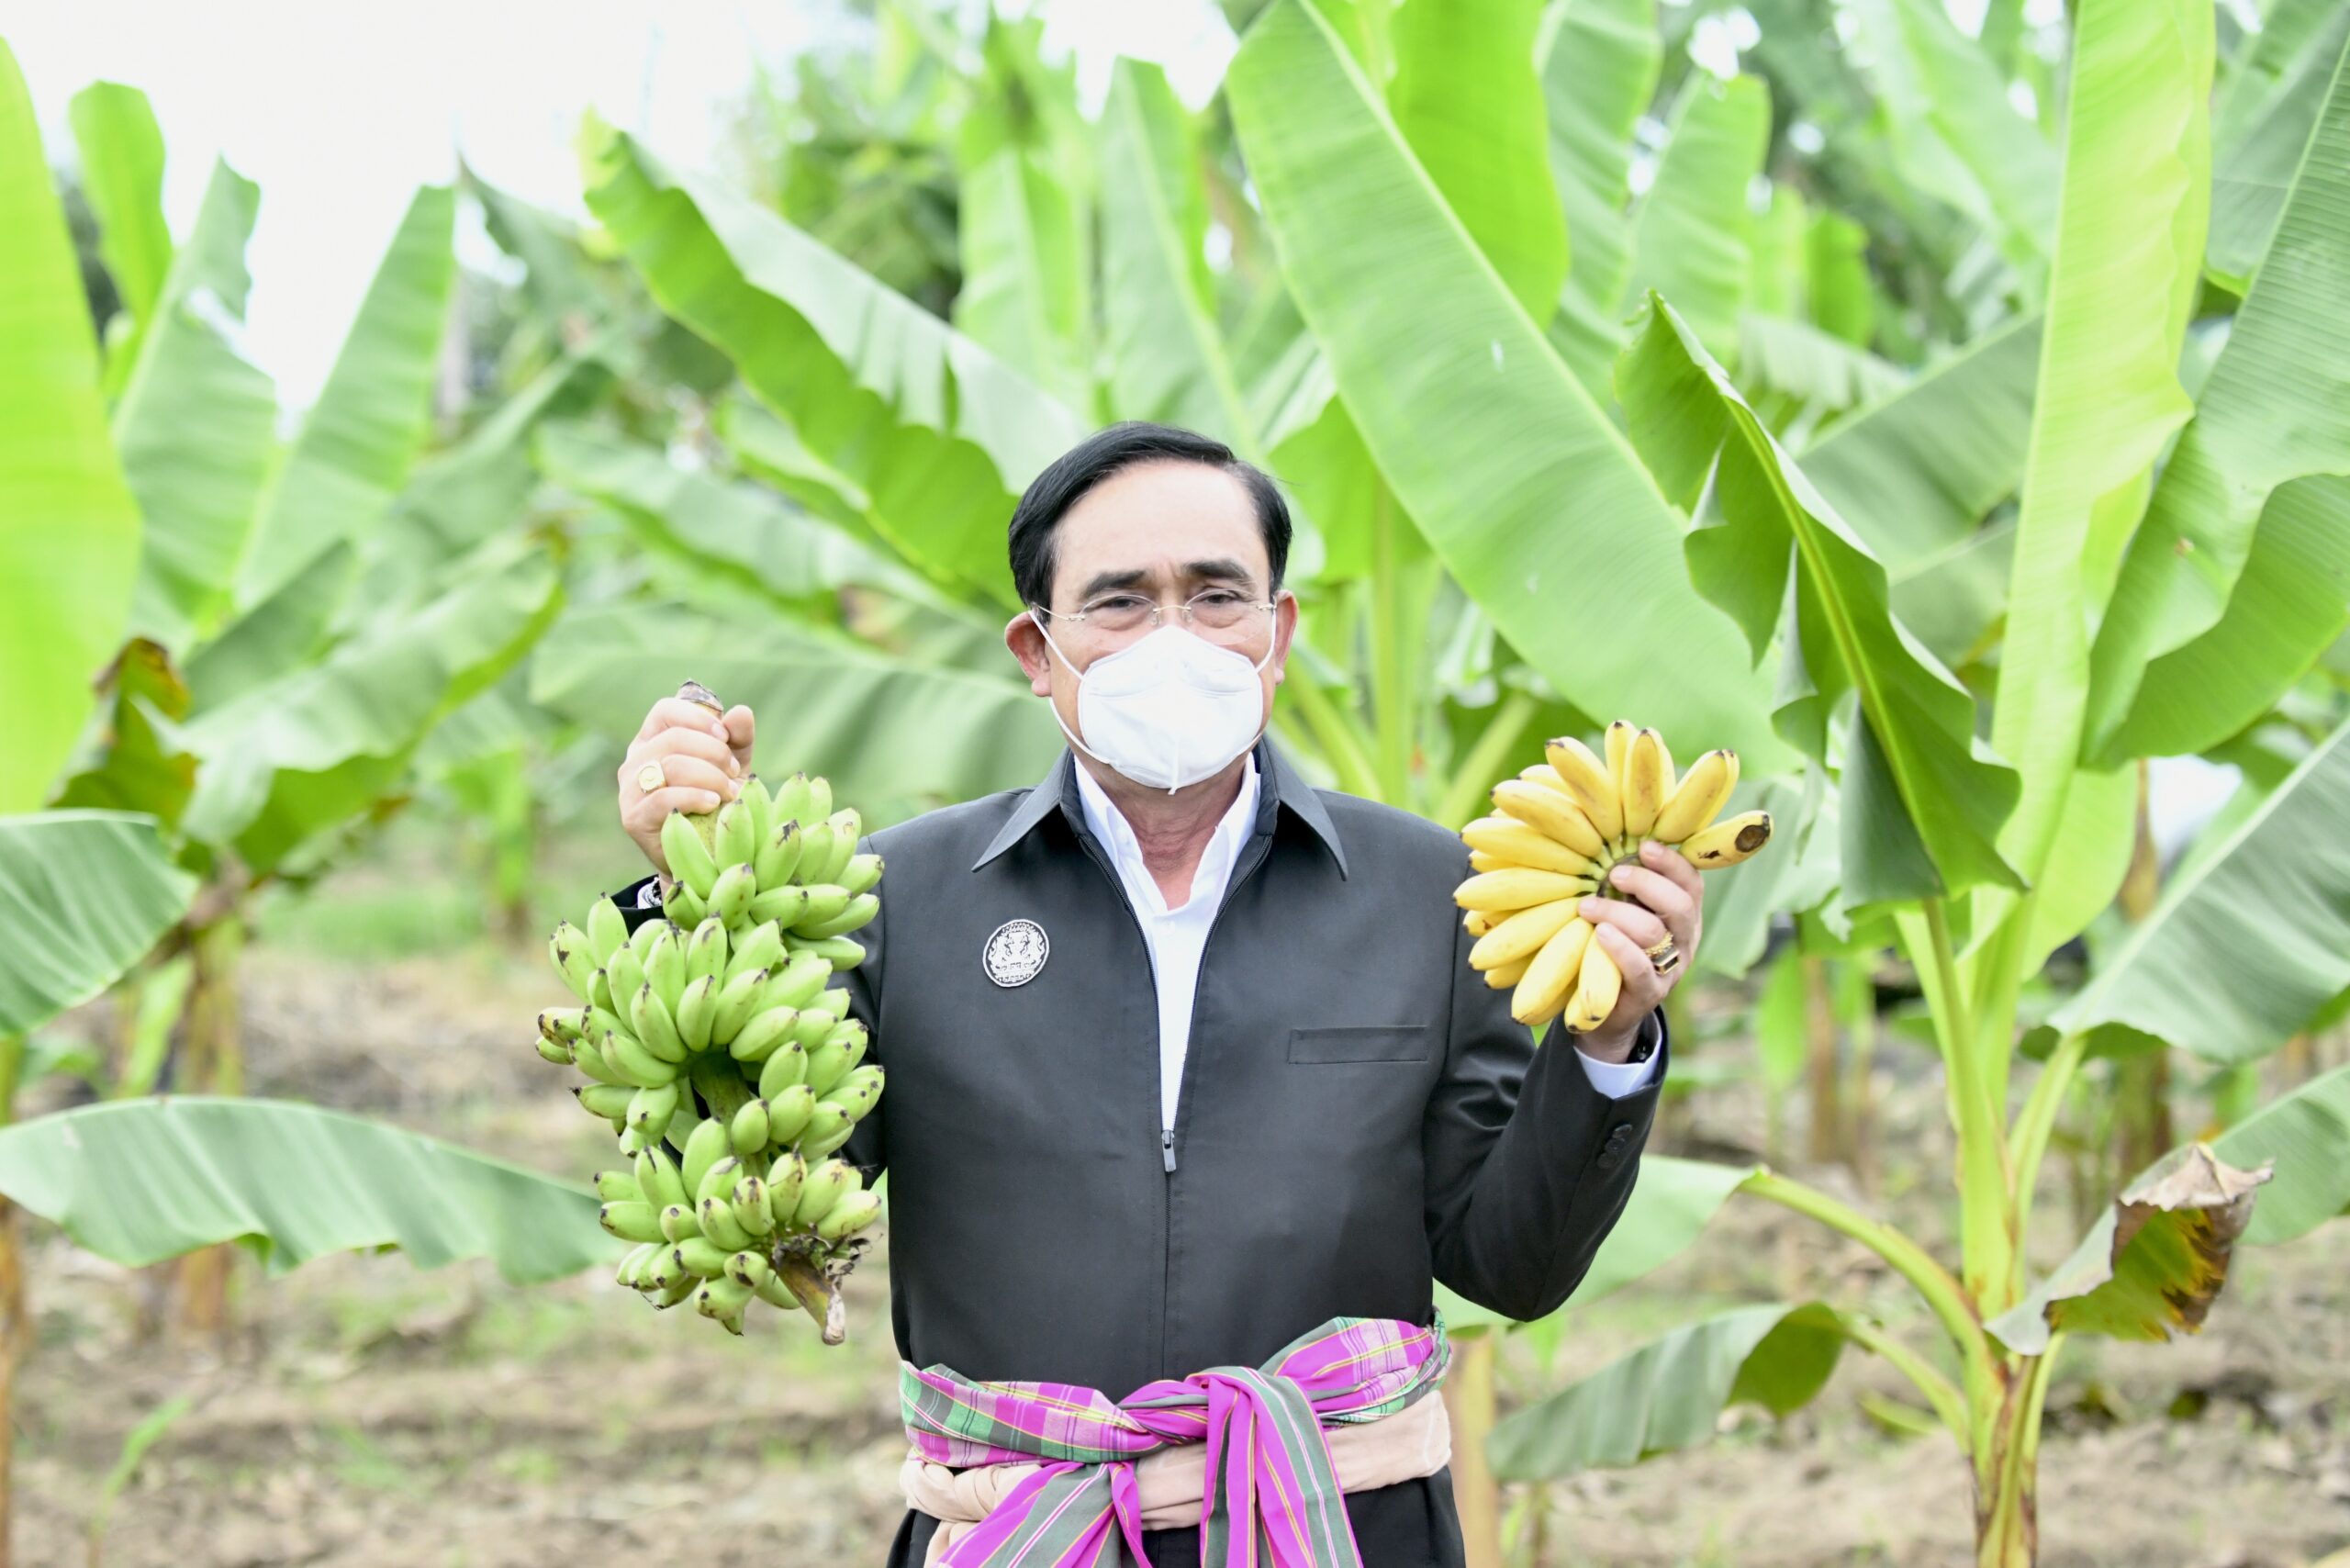 นายกฯ ตรวจเยี่ยมการบริหารงานกล้วยไข่แปลงใหญ่ ต.ท่าพุทรา จ.กำแพงเพชร ส่งเสริมเกษตรแปลงใหญ่ เพิ่มขีดความสามารถในการแข่งขันและการพัฒนาภาคการเกษตรอย่างยั่งยืนตามนโยบายรัฐบาล นายธนกร วังบุญคงชนะ โฆษกประจำสำนักนายกรัฐมนตรีเผยว่า วันนี้ (7 ก.ค.65) เวลา 10.40 น. ณ บ้านท้องคุ้ง หมู่ 7 ตาบลท่าพุทรา อำเภอคลองขลุง จังหวัดกำแพงเพชร พลเอก ประยุทธ์ จันทร์โอชา นายกรัฐมนตรีและรัฐมนตรีว่าการกระทรวงกลาโหม ตรวจเยี่ยมการบริหารงานกล้วยไข่แปลงใหญ่ ตามนโยบายรัฐบาลในการส่งเสริมการทำเกษตรแปลงใหญ่เพื่อเพิ่มขีดความสามารถในการแข่งขันและการพัฒนาภาคการเกษตรอย่างยั่งยืน ซึ่งกล้วยไข่ถือเป็นพืชอัตลักษณ์ (GI) ที่สำคัญประจำจังหวัดกำแพงเพชร มีการแปรรูปเป็นผลิตภัณฑ์ที่หลากหลายสามารถสร้างมูลค่าทางการตลาด สร้างอาชีพและรายได้ให้กับประชาชนในพื้นที่อย่างยั่งยืน โดยมีนายจุติ ไกรฤกษ์ รัฐมนตรีว่าการกระทรวงการพัฒนาสังคมและความมั่นคงของมนุษย์ นายสุชาติ ชมกลิ่น รัฐมนตรีว่าการกระทรวงแรงงาน นายชัยวุฒิ ธนาคมานุสรณ์ รัฐมนตรีว่าการกระทรวงดิจิทัลเพื่อเศรษฐกิจและสังคม ร่วมตรวจเยี่ยมครั้งนี้ด้วย โอกาสนี้ นายกรัฐมนตรีรับฟังรายงานความเป็นมาและสถานการณ์การปลูกกล้วยไข่กำแพงเพชร ตลอดจนปัญหาและแนวทางการส่งเสริมการปลูกกล้วยไข่พันธุ์ดั้งเดิมซึ่งเป็นสินค้าอัตลักษณ์ (GI) ของกำแพงเพชร โดยนายเชาวลิตร แสงอุทัย ผู้ว่าราชการจังหวัดกำแพงเพชร กล่าวว่า จังหวัดกำแพงเพชรดำเนินโครงการยกระดับแปลงใหญ่ด้วยเกษตรสมัยใหม่และเชื่อมโยงตลาด โดยมีกลุ่มเกษตรกรแปลงใหญ่ด้วยเกษตรสมัยใหม่เชื่อมโยงตลาด ปี 2564 เข้าร่วมโครงการ 47 แปลง เกษตรกร 2,216 ราย งบประมาณที่ได้รับการสนับสนุน 137 ล้านบาท โดยเกษตรกรได้นำนวัตกรรมและเทคโนโลยีที่ได้รับไปเพิ่มประสิทธิภาพการผลิต สามารถลดต้นทุนการผลิตได้ร้อยละ17.69 เพิ่มผลผลิตได้ร้อยละ 18.01 ส่วนปัญหาที่เกิดขึ้นเกษตรกรประสบปัญหาภัยธรรมชาติ ความแห้งแล้งและลมพายุ ทำให้เกษตรกรหันไปปลูกพืชชนิดอื่นส่งผลให้พื้นที่ปลูกกล้วยไข่ลดลงเรื่อย ๆ จนเหลือ 2,951 ไร่ ในปัจจุบัน นายกรัฐมนตรีกล่าวว่าชอบกล้วยไข่เพราะอร่อยและมีกลิ่นหอม ขอบคุณในความร่วมมือร่วมใจของทุกคนกับรัฐบาลในการขับเคลื่อนนโยบายที่เป็นประโยชน์ต่อประชาชน พร้อมชื่นชมการดำเนินงานของวิสาหกิจชุมชนกลุ่มเกษตรกรกล้วยไข่ ตำบลท่าพุทรา อำเภอคลองขลุง และทุกภาคส่วนในพื้นที่ที่มีการดำเนินงานด้วยความเข้มแข็ง มีการเข้าถึงปัญหาและนำไปสู่การแก้ไขปัญหาอย่างถูกต้อง ทำให้มีภูมิคุ้มกัน และเป็นไปตามแนวพระราชดำริพระบาทสมเด็จพระเจ้าอยู่หัวรัชกาลที่ 9 และพระราชปณิธานของพระบาทสมเด็จพระเจ้าอยู่หัวรัชกาลที่ 10 สืบสาน รักษาต่อยอด โดยเฉพาะการนำปัญหาที่เกิดขึ้นในอดีตมาวิเคราะห์ แล้วนำไปสู่การแก้ไขปัญหาอย่างตรงจุดทำให้มีรายได้ที่เพียงพอ ซึ่งสอดคล้องกับที่นายกรัฐมนตรีต้องการให้ประชาชนมีรายได้ที่ยั่งยืน ส่วนปัญหาพื้นที่การปลูกกล้วยที่ลดลงนั้น นายกรัฐมนตรีให้ข้อเสนอแนะว่าต้องไปหาสาเหตุของปัญหาที่เกิดขึ้น เพื่อจะได้นำไปสู่การแก้ไขปัญหา โดยมอบหมายให้เกษตรจังหวัดไปศึกษาหาแนวทางร่วมกับหน่วยงานที่เกี่ยวข้อง ต้องหาแนวทางที่เหมาะสมสอดคล้องกับสภาพพื้นที่ รวมถึงการปลูกพืชผสมผสานระหว่างที่รอกล้วยยังไม่ออกผล เพื่อจะได้มีรายได้ต่อเนื่อง และขอให้ใช้น้ำยาหรือปุ๋ยชีวภาพแทนสารเคมี เพื่อช่วยลดต้นทุนการผลิต อย่างไรก็ตาม หากจะปรับเปลี่ยนการปลูกพืชไปสู่พืชใดก็แล้วแต่ ขออย่าทิ้งการปลูกกล้วยไข่ นายกรัฐมนตรีกล่าวถึงปัญหาผลกระทบเรื่องราคาต้นทุนการผลิต เช่น ปุ๋ย ที่ได้รับผลจากความขัดแย้งในต่างประเทศที่เกิดขึ้นขณะนี้ รัฐบาลก็พยายามดูแลอย่างเต็มที่ แต่ราคาปุ๋ยก็แพงทั้งหมดและทั่วโลกได้รับผลกระทบเช่นกัน ดังนั้น ขณะนี้จึงขอให้ทุกคนปรับตัว โดยเฉพาะการหันมาใช้ปุ๋ยชีวภาพแทนสารเคมี และขอให้ทุกคนอดทนอีกหน่อย นายกรัฐมนตรีก็รู้สึกเจ็บปวดและรับรู้ถึงปัญหาที่ประชาชนและเกษตรกรได้รับจากผลกระทบที่เกิดขึ้น ทั้งนี้ ทำงานก็เพื่อประชาชน และรัฐบาลยังให้ความสำคัญ และดำเนินการดูแลบริหารจัดการน้ำ ทั้งน้ำบนดิน น้ำใต้ดิน (น้ำบาดาล) การทำระบบส่งน้ำ แหล่งเก็บกักน้ำ ให้เพียงพอทั้งการอุปโภคบริโภค และการเกษตร รวมถึงการดำเนินการเรื่องของโครงสร้างพื้นฐานคมนาคมเข้าถึงทุกพื้นที่ ซึ่งสิ่งต่าง ๆ ที่รัฐบาลได้ดำเนินการนั้น จะทำให้ประชาชนได้รับประโยชน์ทั้งโดยตรงและโดยอ้อม เพราะทุกอย่างจะเชื่อมโยงถึงกันทั้งหมดตามที่รัฐบาลได้ดำเนินการไว้ นายกรัฐมนตรีย้ำการทำเกษตรต้องมีการลดต้นทุนการผลิต โดยให้นำเครื่องมือ เครื่องจักร รวมถึงการนำเทคโนโลยีสมัยใหม่เข้ามาช่วย และผลิตให้สอดคล้องกับความต้องการของตลาด โดยเฉพาะต้องมีการรวมกลุ่มกันเพื่อรัฐบาลจะเข้ามาดูแลได้ เช่น กองทุนหมู่บ้าน โดยรัฐบาลจะดูแลให้ดีที่สุด พร้อมกล่าวชื่นชมที่มีการสร้างมูลค่าทางการตลาดไปสู่ช่องทางต่าง ๆ ทั้งออฟไลน์และออนไลน์ รวมถึงมีการประชาสัมพันธ์อย่างต่อเนื่องให้เป็นที่รู้จักอย่างกว้างขวางมากขึ้น และมีการใช้ทุกส่วนของกล้วยไข่อย่างมีประสิทธิภาพครบวงจร คุ้มค่า ในการนำไปแปรรูปเป็นผลิตภัณฑ์ต่าง ๆ เพื่อสร้างมูลค่า โดยขอให้ดำเนินการต่อเนื่อง รวมถึงการทำเกษตรปลอดภัย GAP และเกษตร GI ซึ่งนายกรัฐมนตรีสนับสนุนให้มีการดำเนินการให้มากขึ้นตามนโยบายรัฐบาล เพื่อสร้างขีดความสามารถในการแข่งขัน และสร้างมูลค่าให้กับผลิตภัณฑ์ ย้ำว่ารัฐบาลจะพยายามหาช่องทางในการดูแลให้มากยิ่งขึ้น นายกรัฐมนตรีกล่าวว่ารักทุกคน รักทุกจังหวัด เพราะทุกคนคือคนไทย ซึ่งการที่ทุกคนรักสามัคคีกันทำให้ต่างประเทศเกิดความเชื่อมั่นมาลงทุนในประเทศไทยมากขึ้น ซึ่งขณะนี้หลายประเทศก็มาลงทุนในประเทศไทยแล้ว ทั้งโรงงานอุตสาหกรรมใหม่ ๆ รถยนต์ไฟฟ้า ซึ่งจะทำให้ประเทศไทยมีรายได้เพิ่มขึ้นจากภาษีเพื่อนำกลับมาดูแลประชาชนและพัฒนาประเทศต่อไป ในต้อนท้าย นายกรัฐมนตรีกำชับให้ทุกคนดูแลสุขภาพตนเอง และปฏิบัติตามมาตรการด้านสาธารณสุข Universal Prevention โดยเฉพาะการสวมหน้ากากอนามัยเพื่อป้องกันการแพร่ระบาดของโควิด19 และทำให้อยู่กับโควิดอย่างปลอดภัย ซึ่งจะทำให้ทุกคนมีเงินไปใช้ในด้านอื่นที่จำเป็น ทำให้ทุกคนอยู่รอดทั้งปลอดภัยจากโควิด ปลอดภัยจากสถานการณ์เศรษฐกิจ เพื่อไปสู่ความยั่งยืน คือทุกคนมีรายได้ที่เพียงพอสอดคล้องกับสถานการณ์ที่เกิดขึ้น จากนั้นนายกรัฐมนตรีเยี่ยมชมการดำเนินงานการบริหารจัดการกล้วยไข่แปลงใหญ่ ตำบลท่าพุทรา โดยมีนางดวงฤทัย เงินยวง ประธานกลุ่มกล้วยไข่แปลงใหญ่ฯ นำเยี่ยมชม รวมทั้งนายกรัฐมนตรีได้ปลูกกล้วยไข่สายพันธุ์กำแพงเพชรร่วมกับชาวกำแพงเพชรด้วย พร้อมเยี่ยมชมผลิตภัณฑ์แปรรูปต่าง ๆ จากกล้วยไข่ซึ่งเป็นสินค้าและผลิตภัณฑ์เป็นเอกลักษณ์ท้องถิ่นที่ขึ้นชื่อ เช่น ข้าวเกรียบกล้วยไข่ กล้วยอบแดด คุกกี้แป้งกล้วยไข่ น้ำพริกกล้วยไข่ ท้องม้วน-ทองพับกล้วยไข่ เป็นต้น สำหรับวิสาหกิจชุมชนกลุ่มเกษตรกรกล้วยไข่ ตำบลท่าพุทรา อำเภอคลองขลุง เป็นกลุ่มเกษตรกรที่มีอาชีพทำสวนกล้วยไข่เป็นอาชีพหลัก ได้เข้าร่วมเป็นกลุ่มเกษตรกรแปลงใหญ่กล้วยไข่ตามนโยบายรัฐบาล ในปี พ.ศ. 2560 เพื่อเข้าสู่การพัฒนาตลอดห่วงโซ่อุปทานตามระบบเกษตรแปลงใหญ่ ที่นำไปสู่การลดต้นทุนและพัฒนาคุณภาพผลผลิตให้เป็นที่ต้องการของตลาด ตามมาตรฐานการปฏิบัติทางการเกษตรที่ดีและเหมาะสม (GAP : Good Agricultural Practice) และการรับรองสิ่งบ่งชี้ทางภูมิศาสตร์ (GI : Geographical Indication) รวมทั้งเพื่อเป็นการอนุรักษ์สายพันธุ์กล้วยไข่พื้นเมืองให้เป็นสัญลักษณ์คู่เมืองกำแพงเพชร โดยทางกลุ่มได้รับการส่งเสริมจากหน่วยงานที่เกี่ยวข้องในการพัฒนาวิธีการผลิต และการบริหารจัดการแบบระบบแปลงใหญ่ ส่งผลให้ผลผลิตเพิ่มขึ้น ต้นทุนการผลิตลดลง ช่วยลดการใช้สารเคมีโดยใช้สารชีวภัณฑ์ทดแทน และคุณภาพผลผลิตเพิ่มขึ้น โดยผลผลิตที่ได้เป็นกล้วยไข่ปลอดภัยได้มาตรฐาน GAP 33 ราย และได้มาตรฐาน GI 27 ราย รวมทั้งสามารถสร้างมูลค่าเพิ่มทางการตลาด โดยมีการแปรรูปเป็นผลิตภัณฑ์ต่าง ๆ อาทิ ข้าวเกรียบกล้วยไข่ น้ำพริกกล้วยไข่ ชาเกสรกล้วยไข่ อาหารสัตว์สำหรับเลี้ยงแพะ และจำหน่ายผ่านช่องทางการตลาดทั้งในกรุงเทพฯ และจังหวัดต่าง ๆ รวมทั้งยังมีช่องทางตลาด Online ในแพลตฟอร์มต่าง ๆ ////